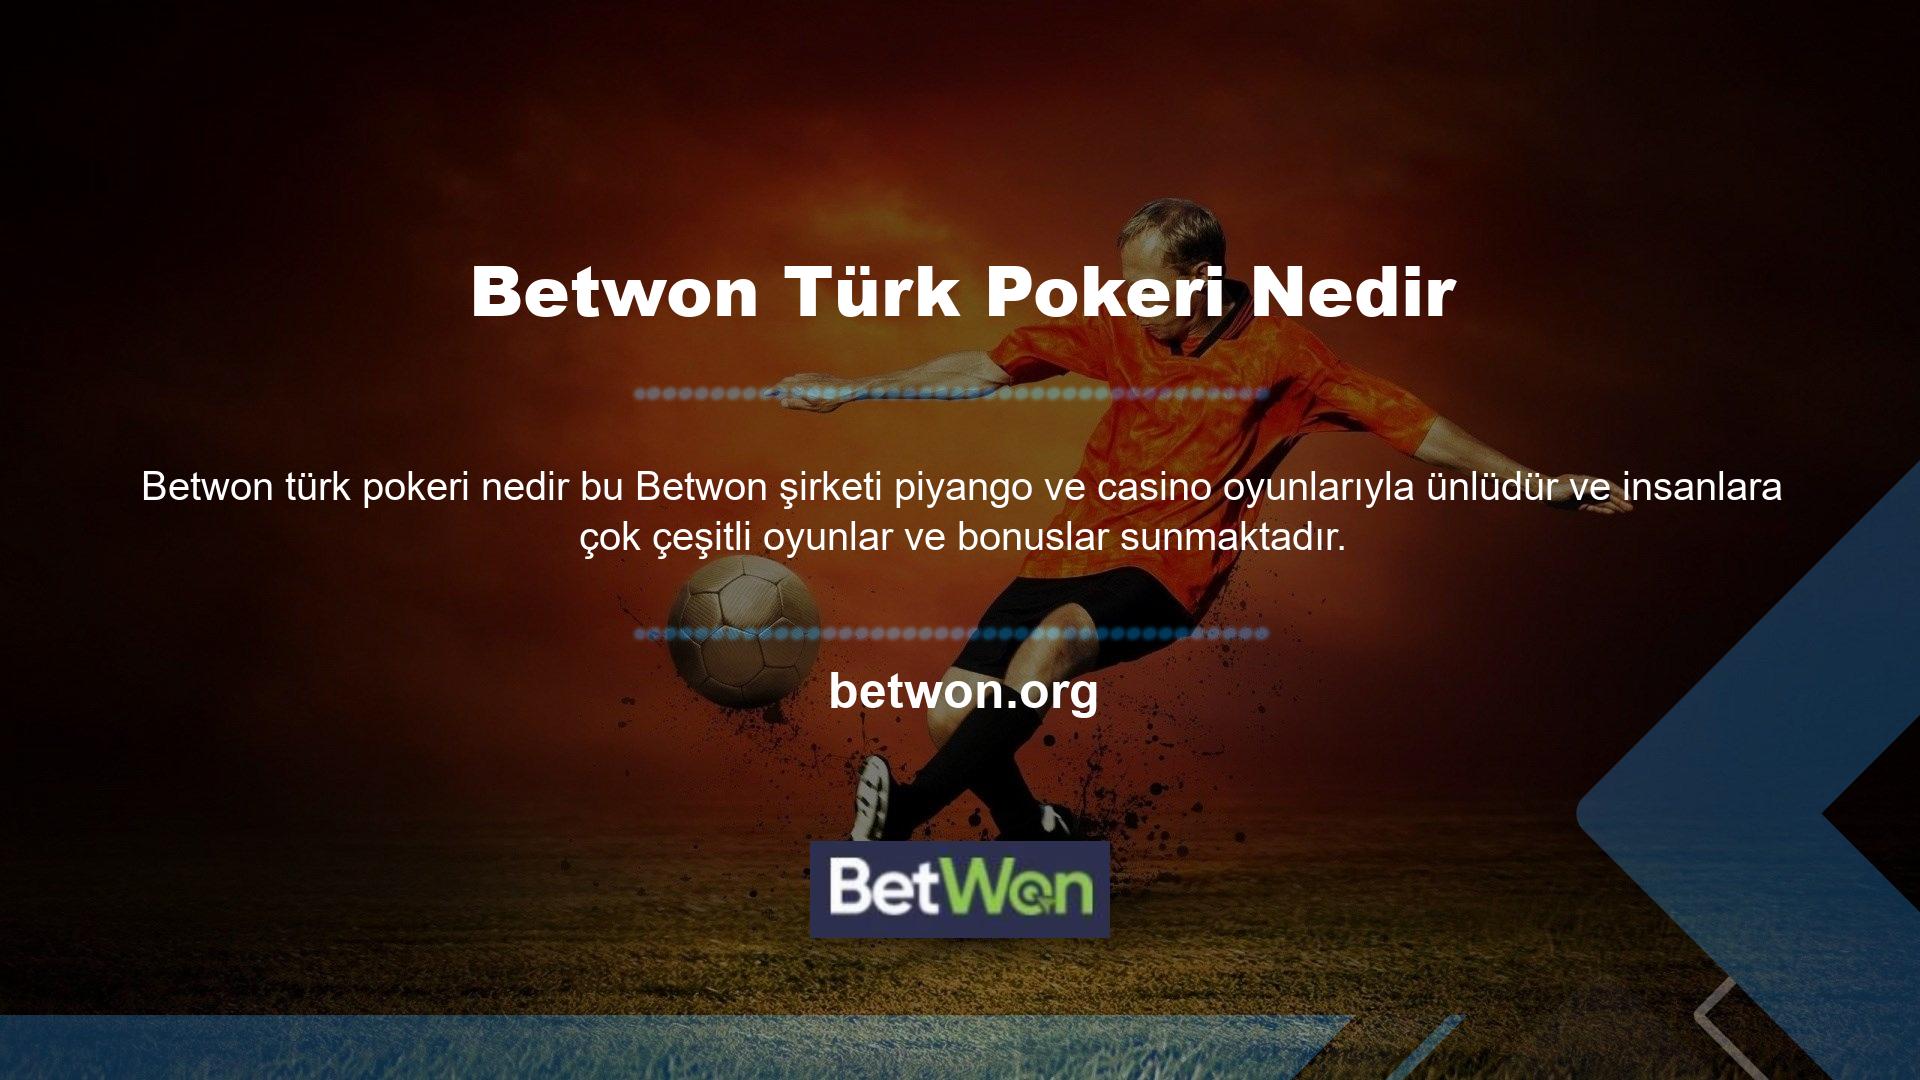 Sadece birçok kişi arasında popüler olmakla kalmıyor, aynı zamanda Türk pokeri hakkında daha fazla bilgi edinmek isteyen birçok kişi de var